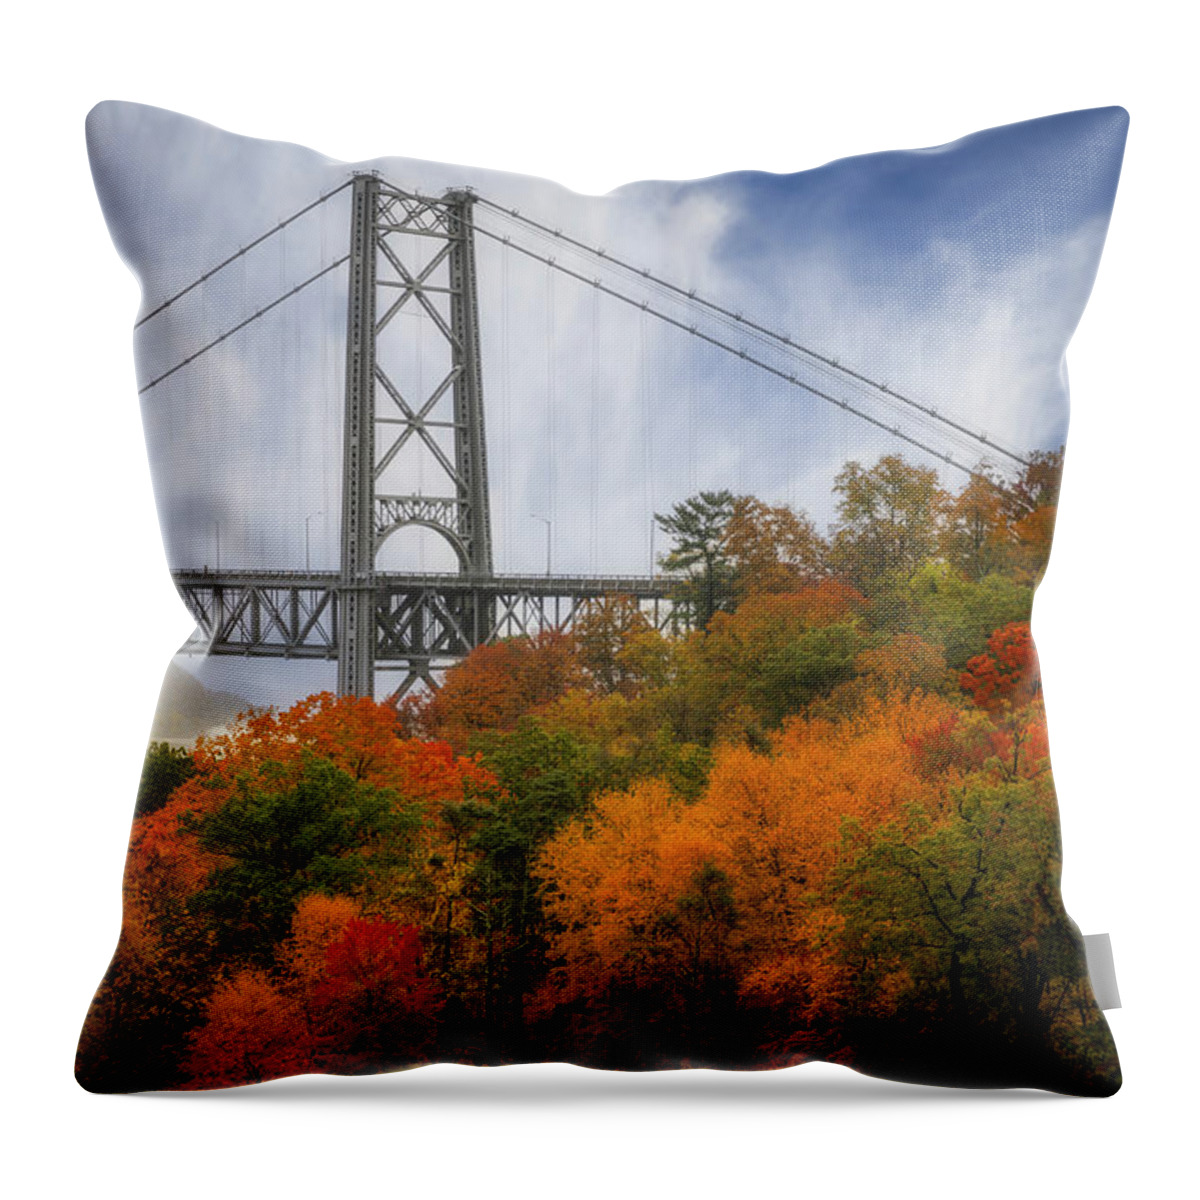 Bear Mountain Throw Pillow featuring the photograph Bear Mountain Bridge #1 by Susan Candelario